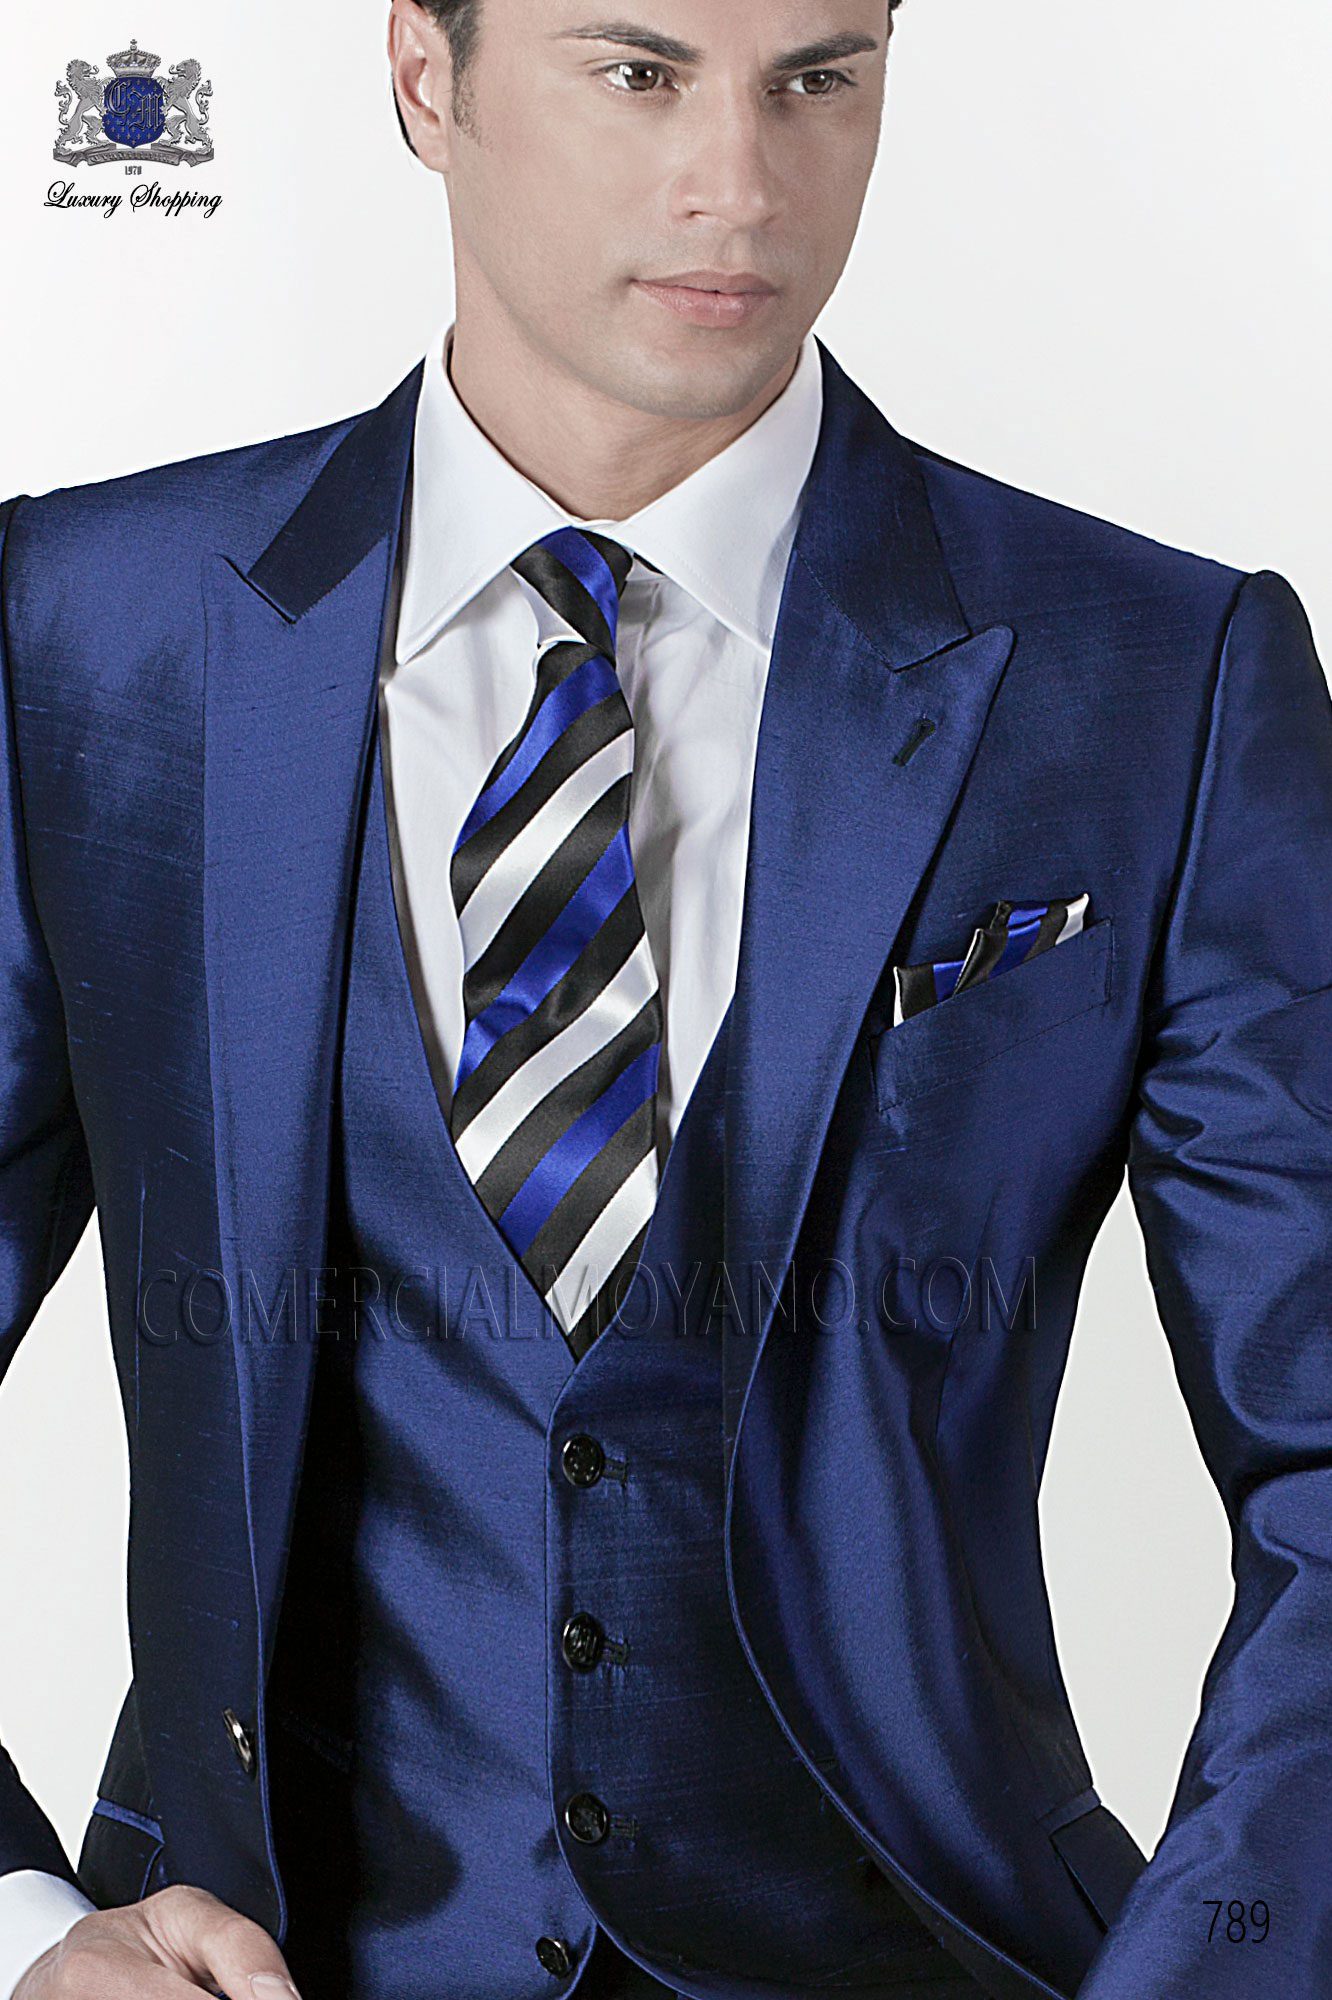 Mens Formal Wear,Mens Suits, Suits, Custom suit, suits, mtm suit, bespoke suits, tailored Suits, ready made suit